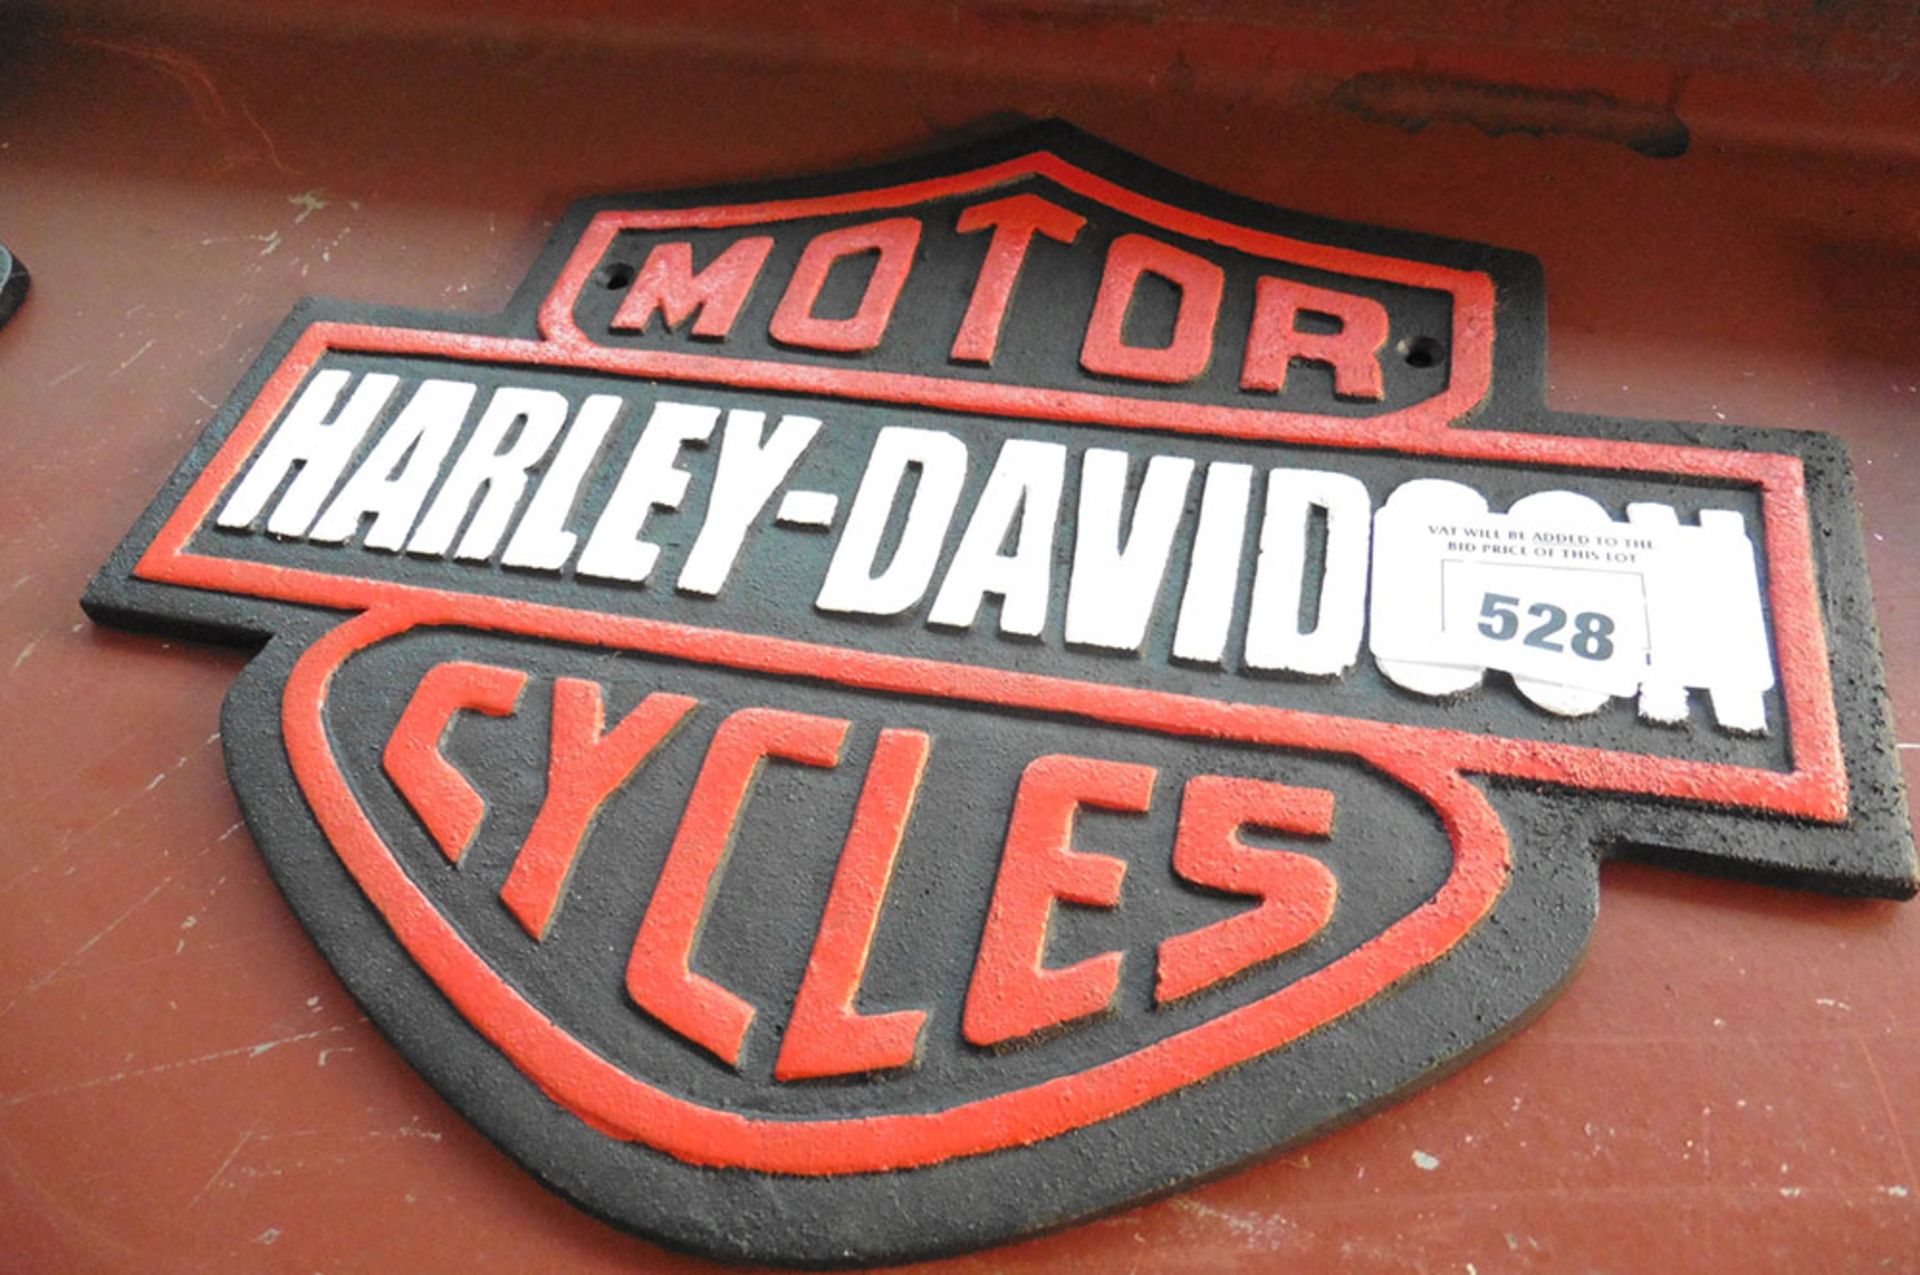 Harley Davidson cast sign (181)